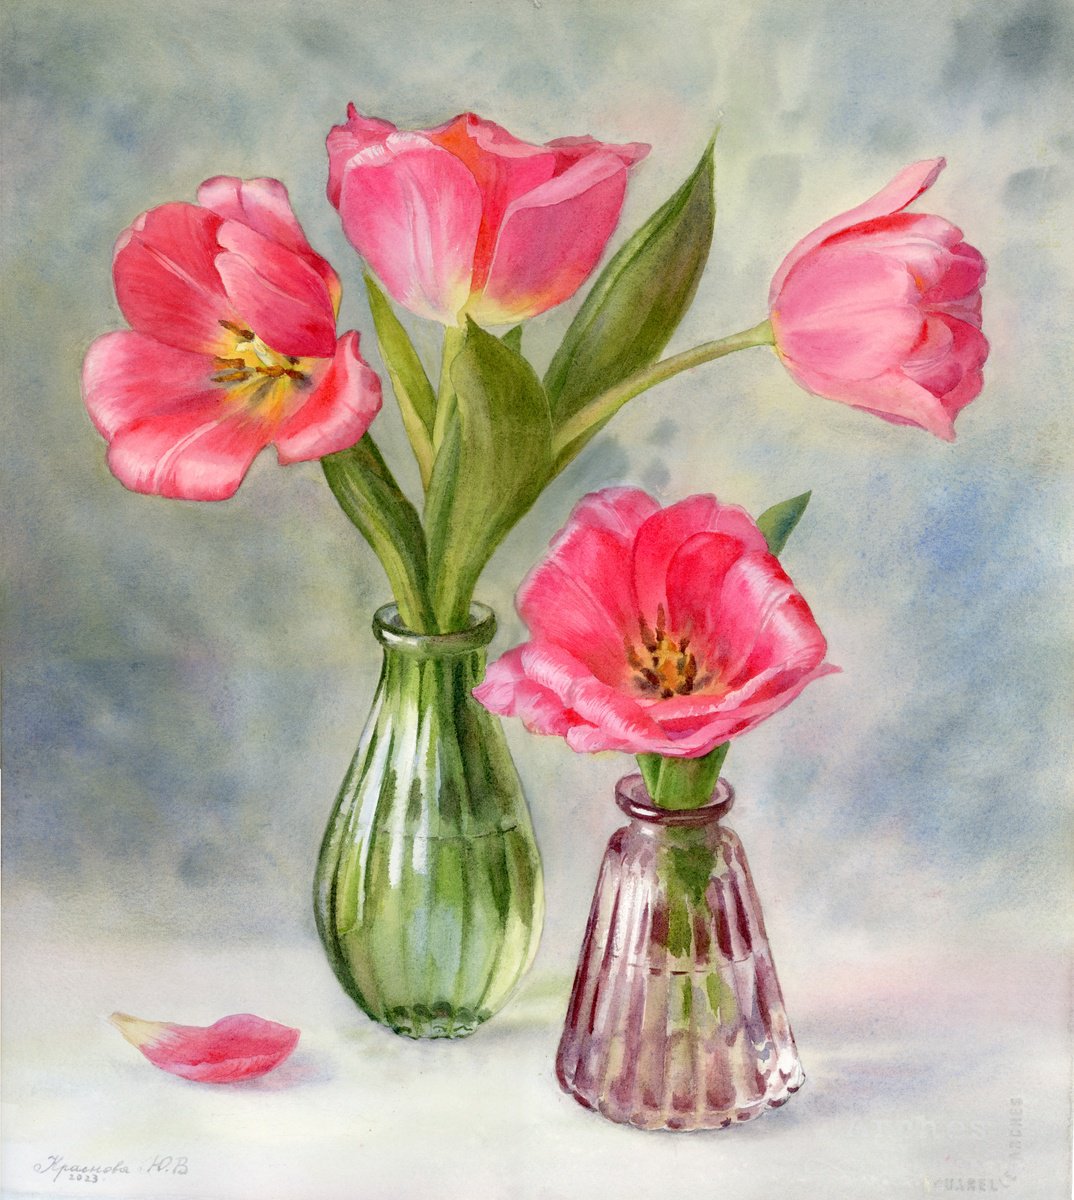 Tulips in glass vases by Yulia Krasnov